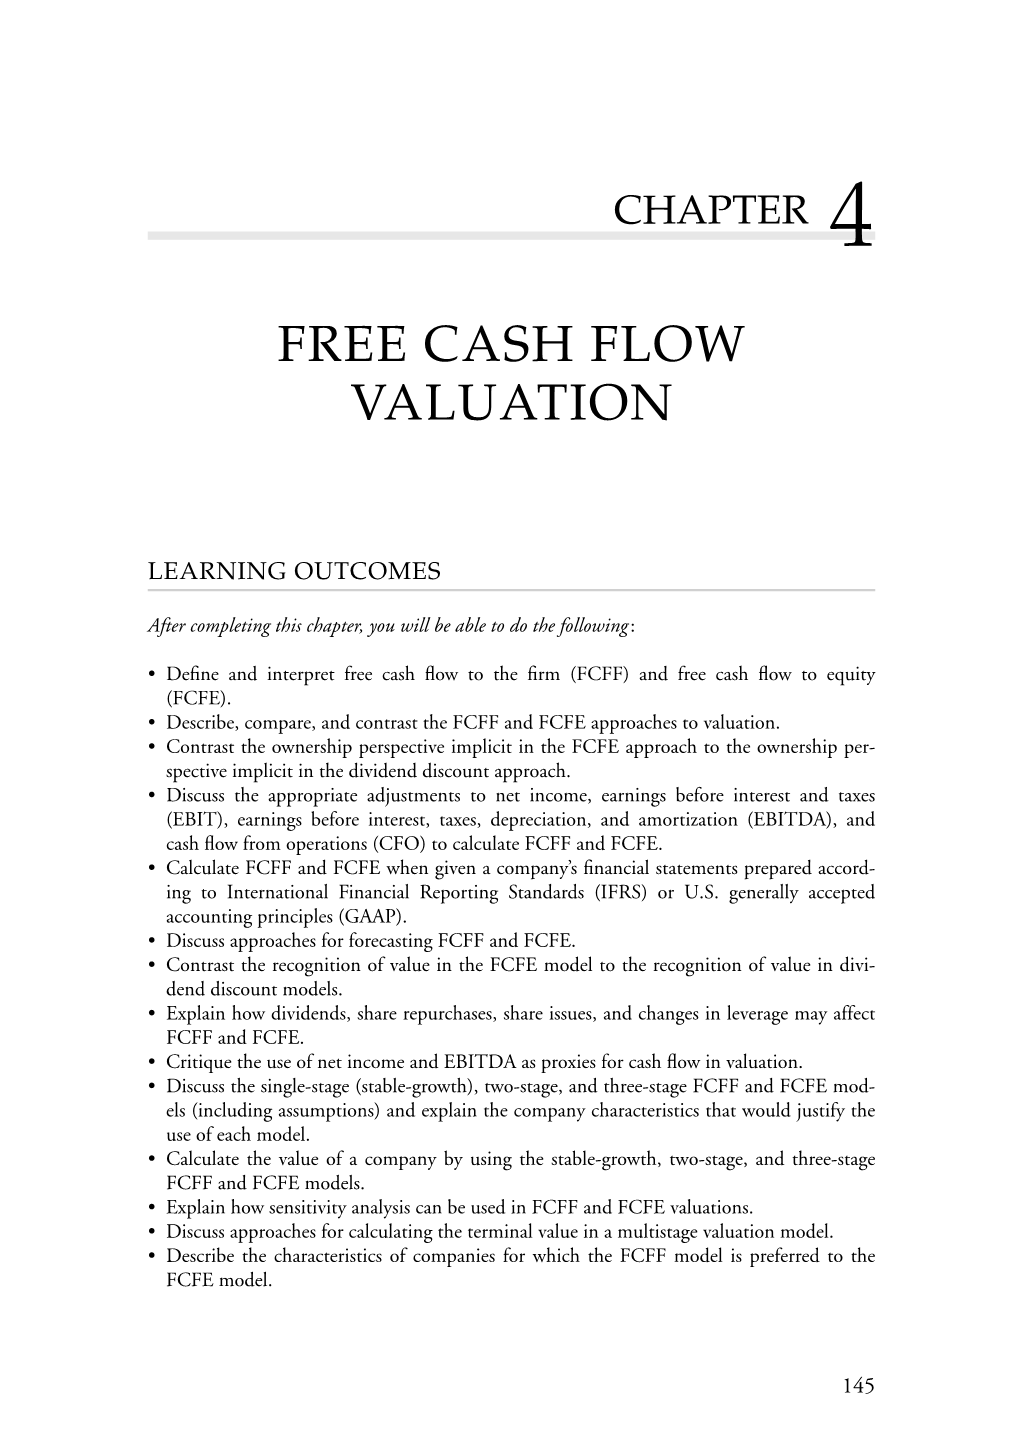 Free Cash Flow Valuation